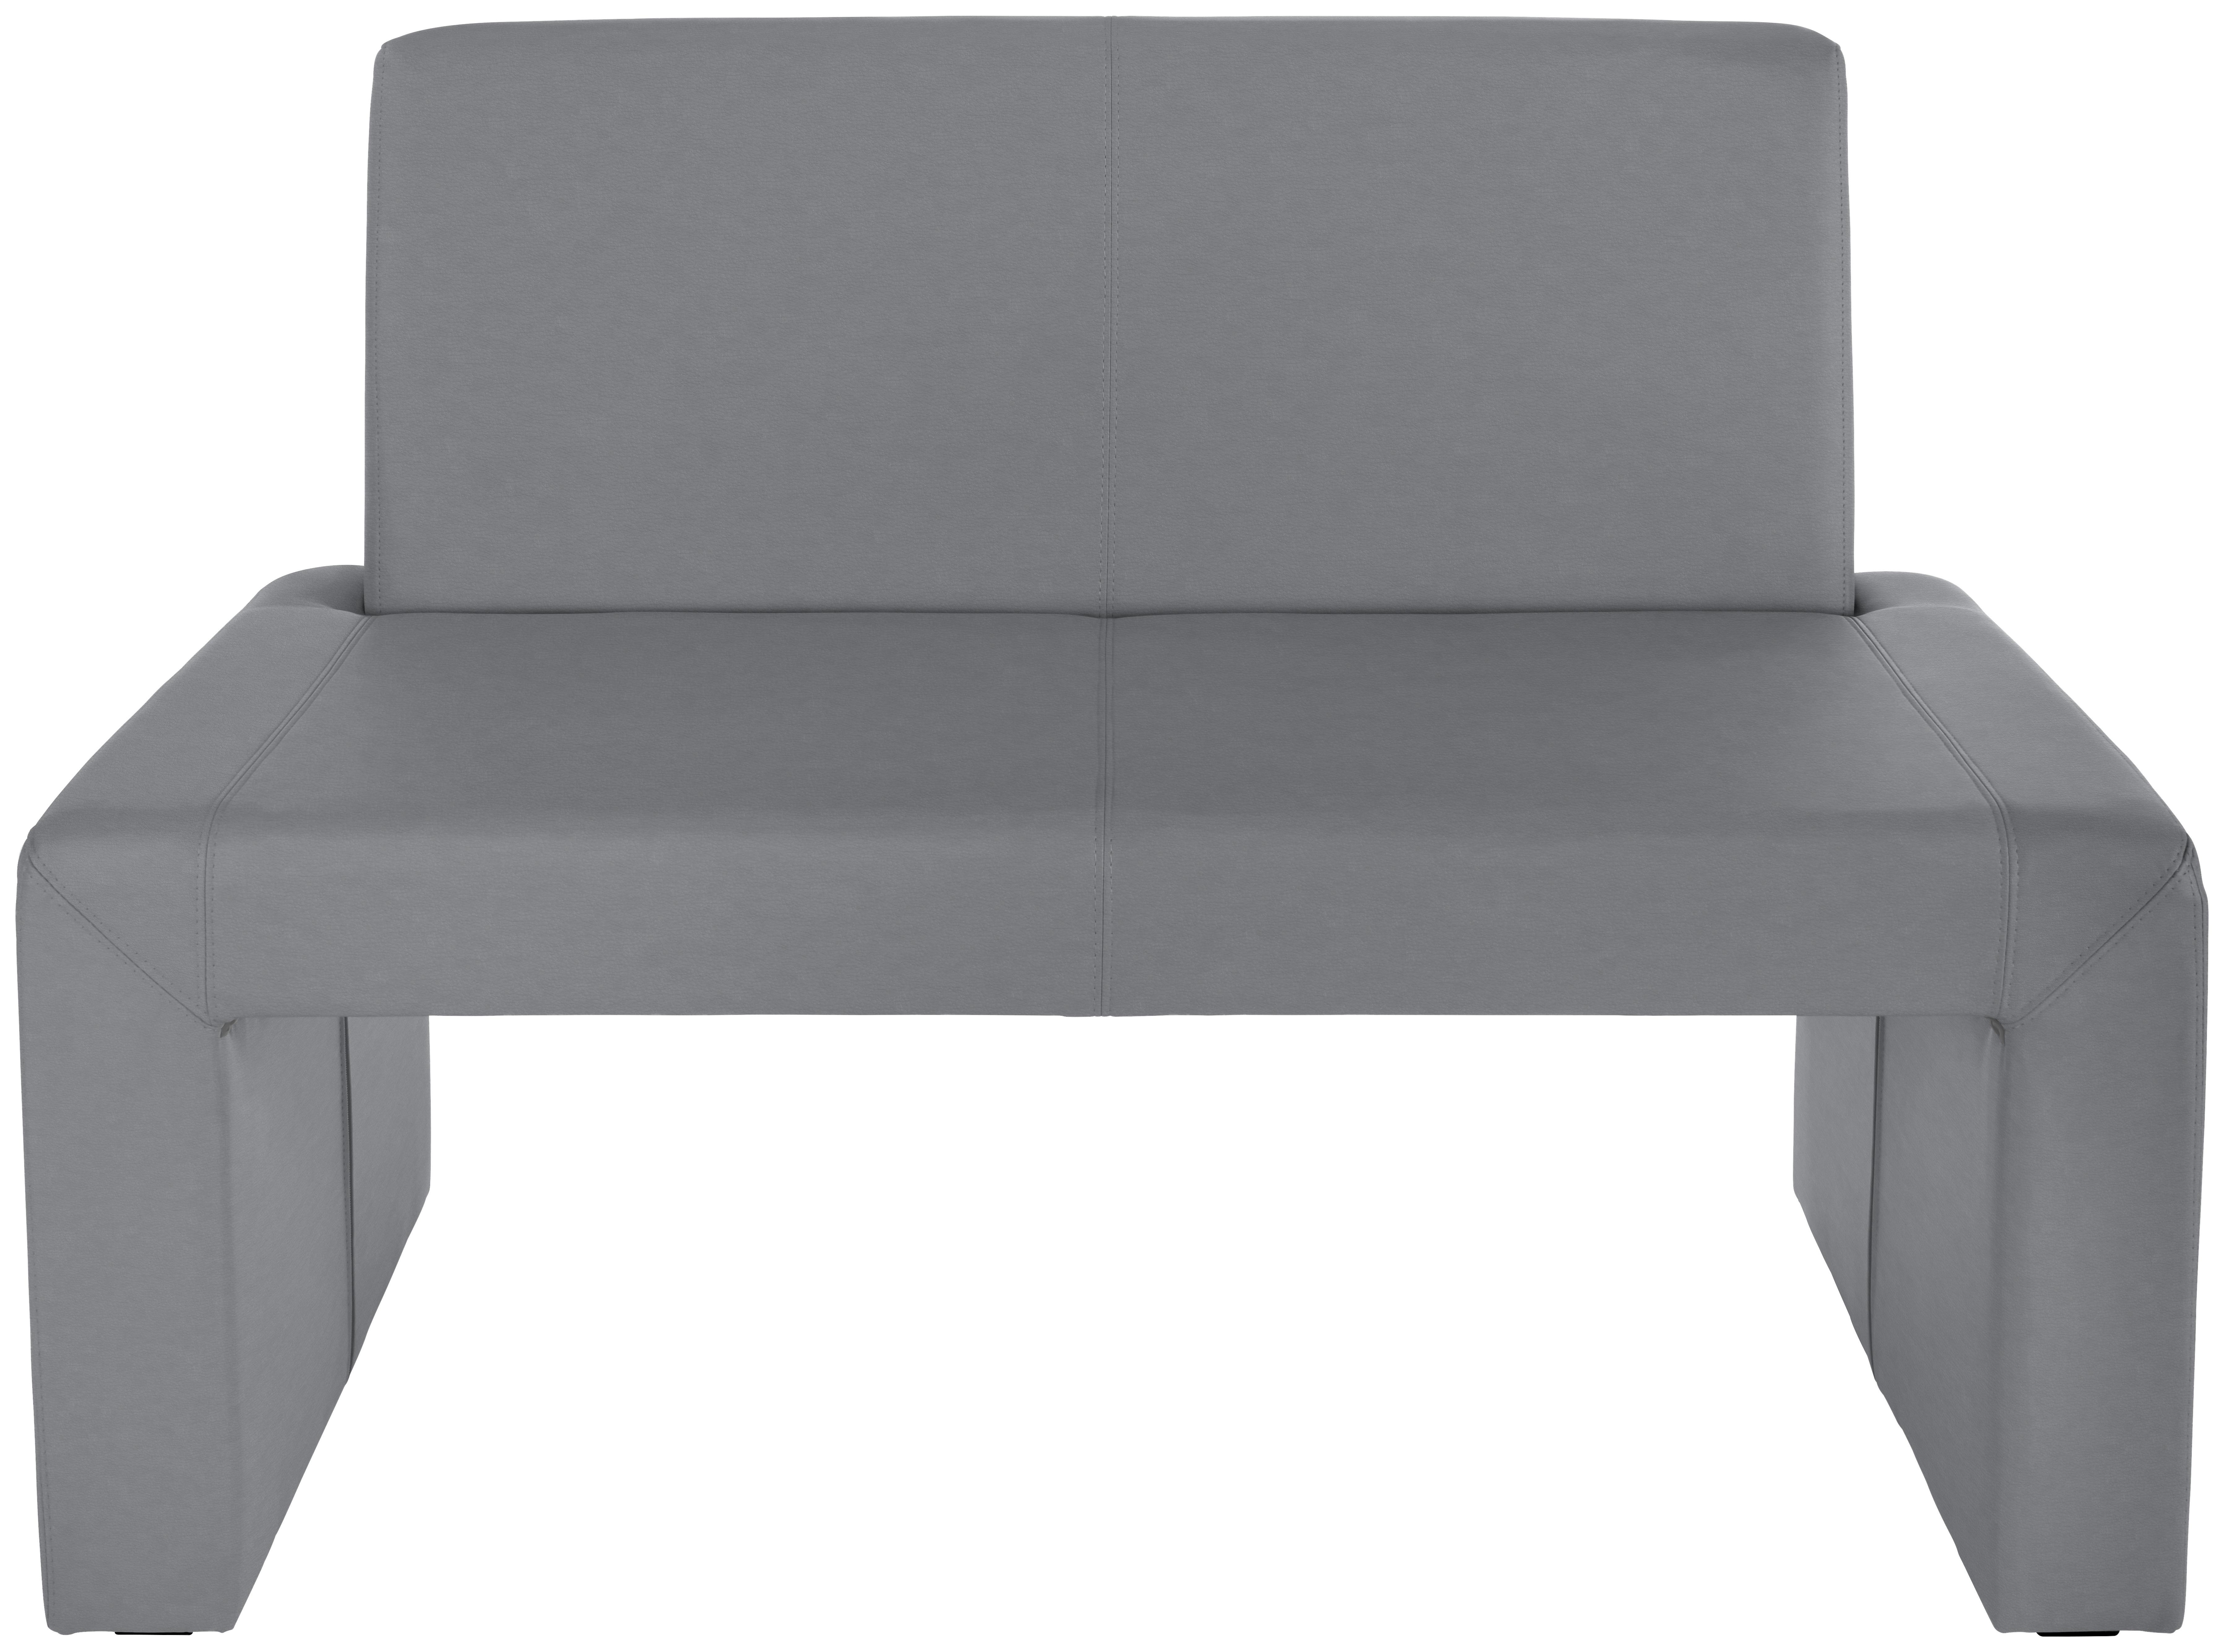 Sitzbank mit Lehne Gepolstert Grau Valun II B: 120 cm - Grau, KONVENTIONELL, Holz/Holzwerkstoff (120/88/48cm)